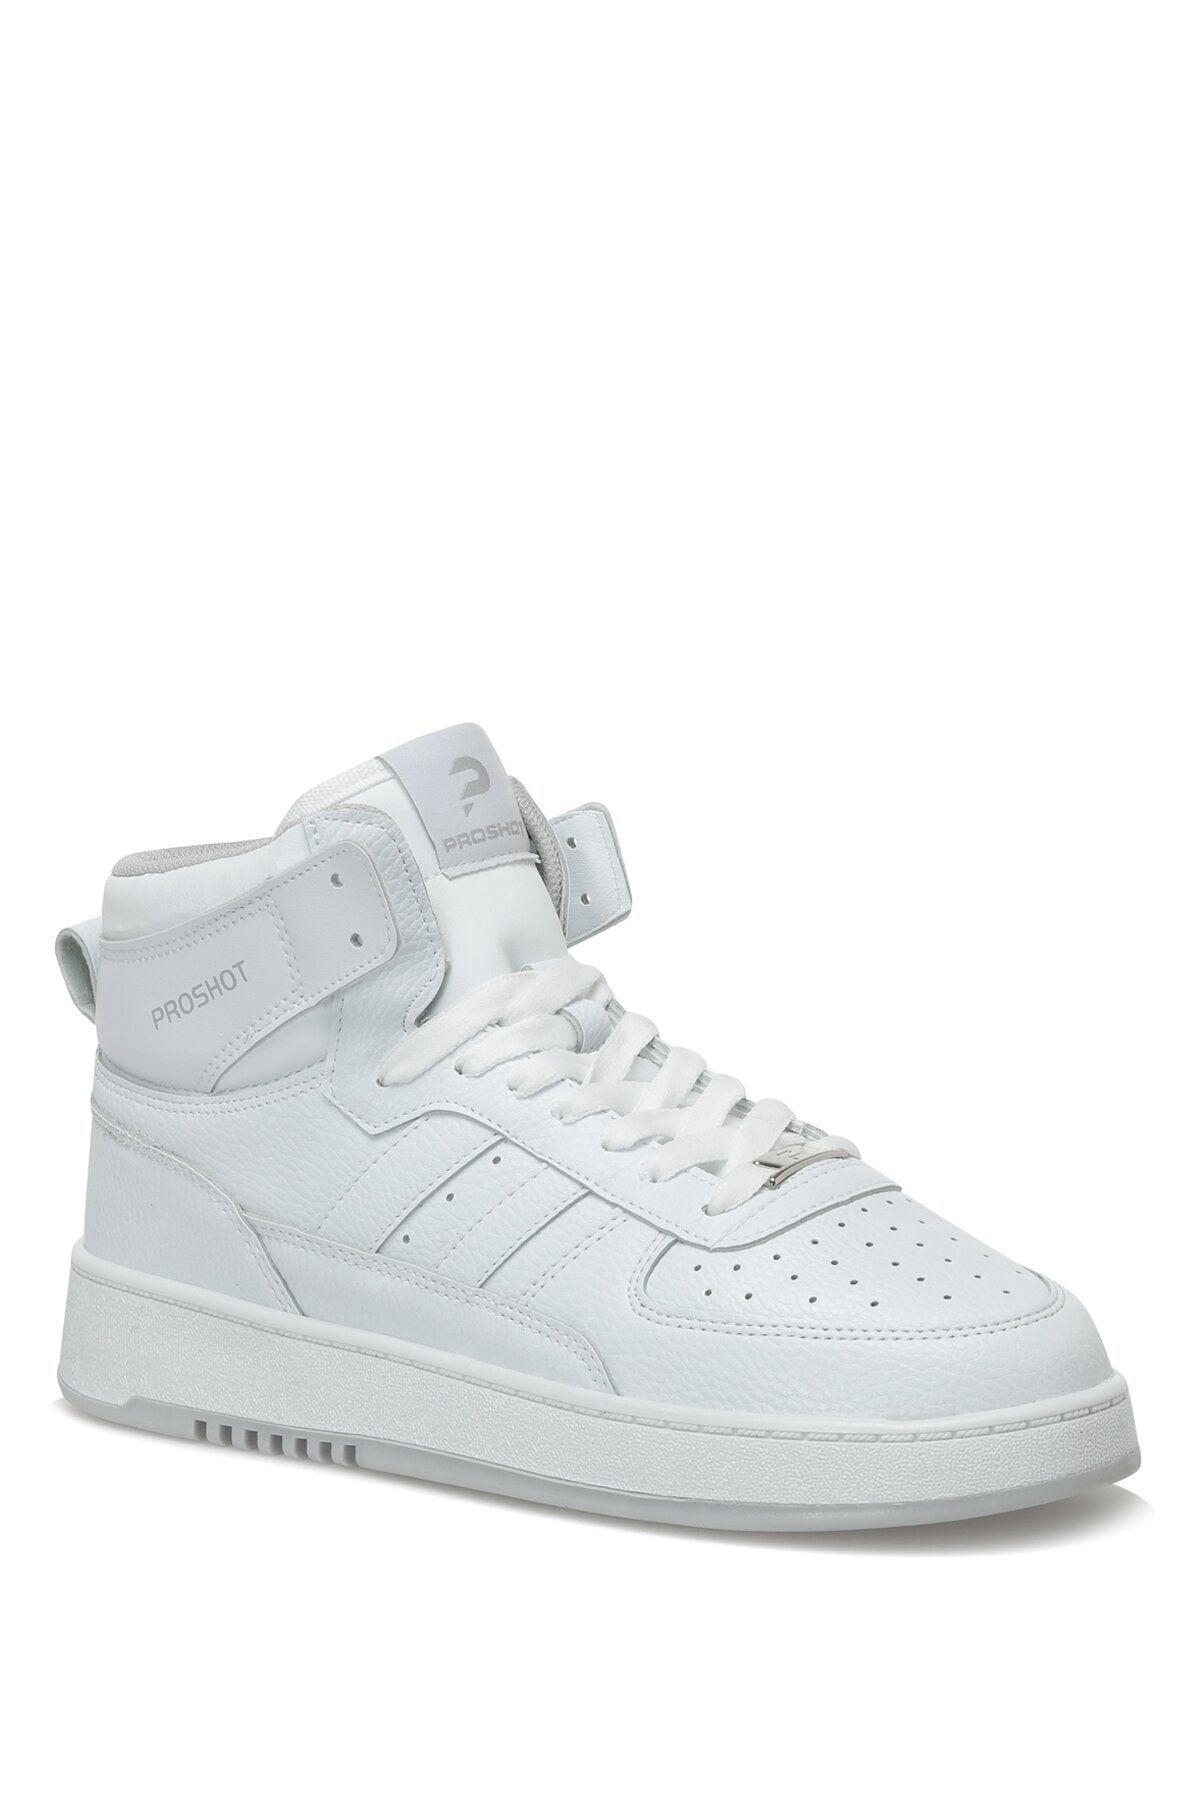 Proshot Ps155 Hı 2pr Beyaz Erkek High Sneaker